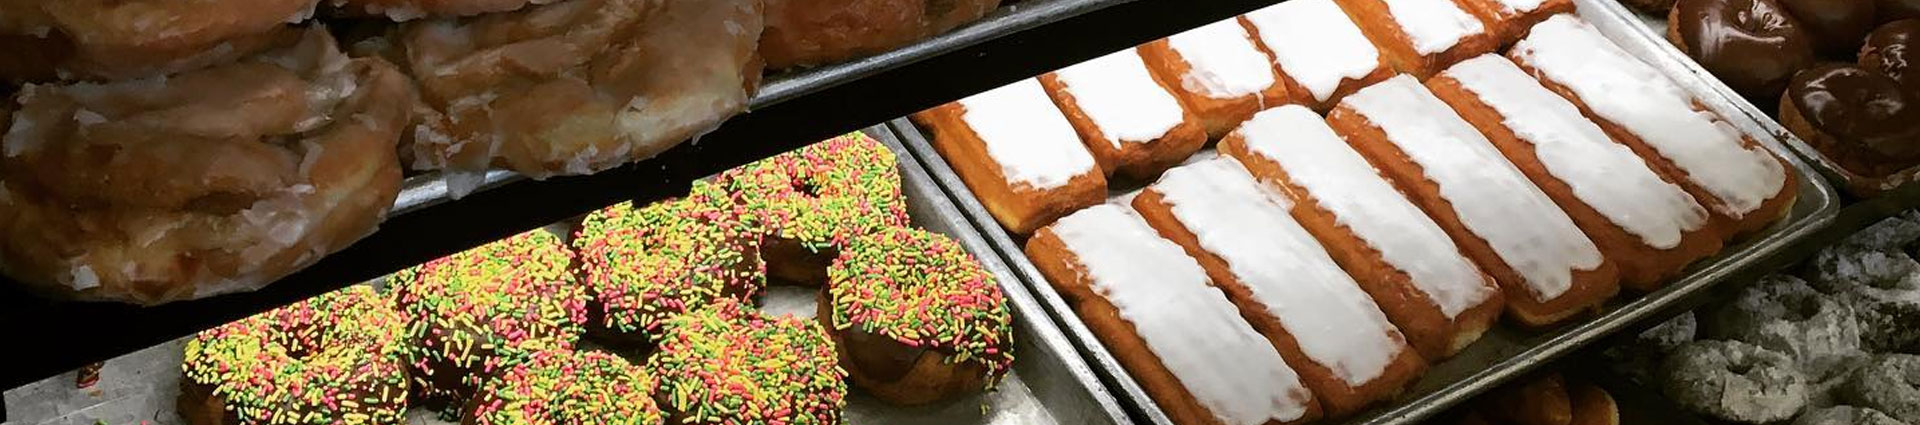 Sheet trays of doughnuts